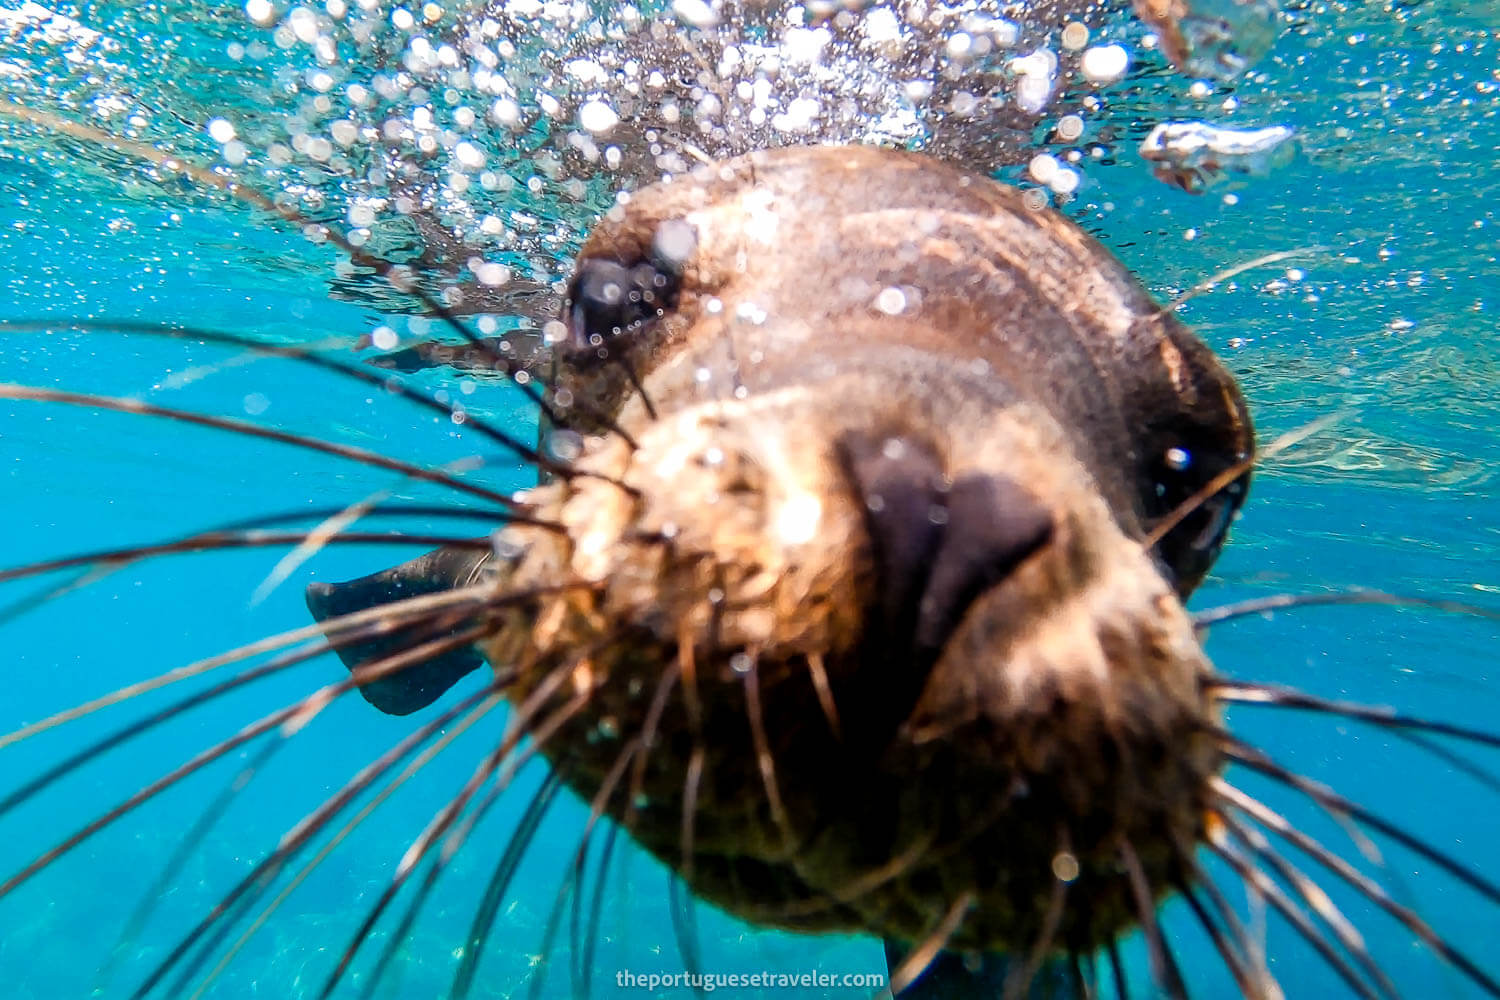 A sea lion selfie